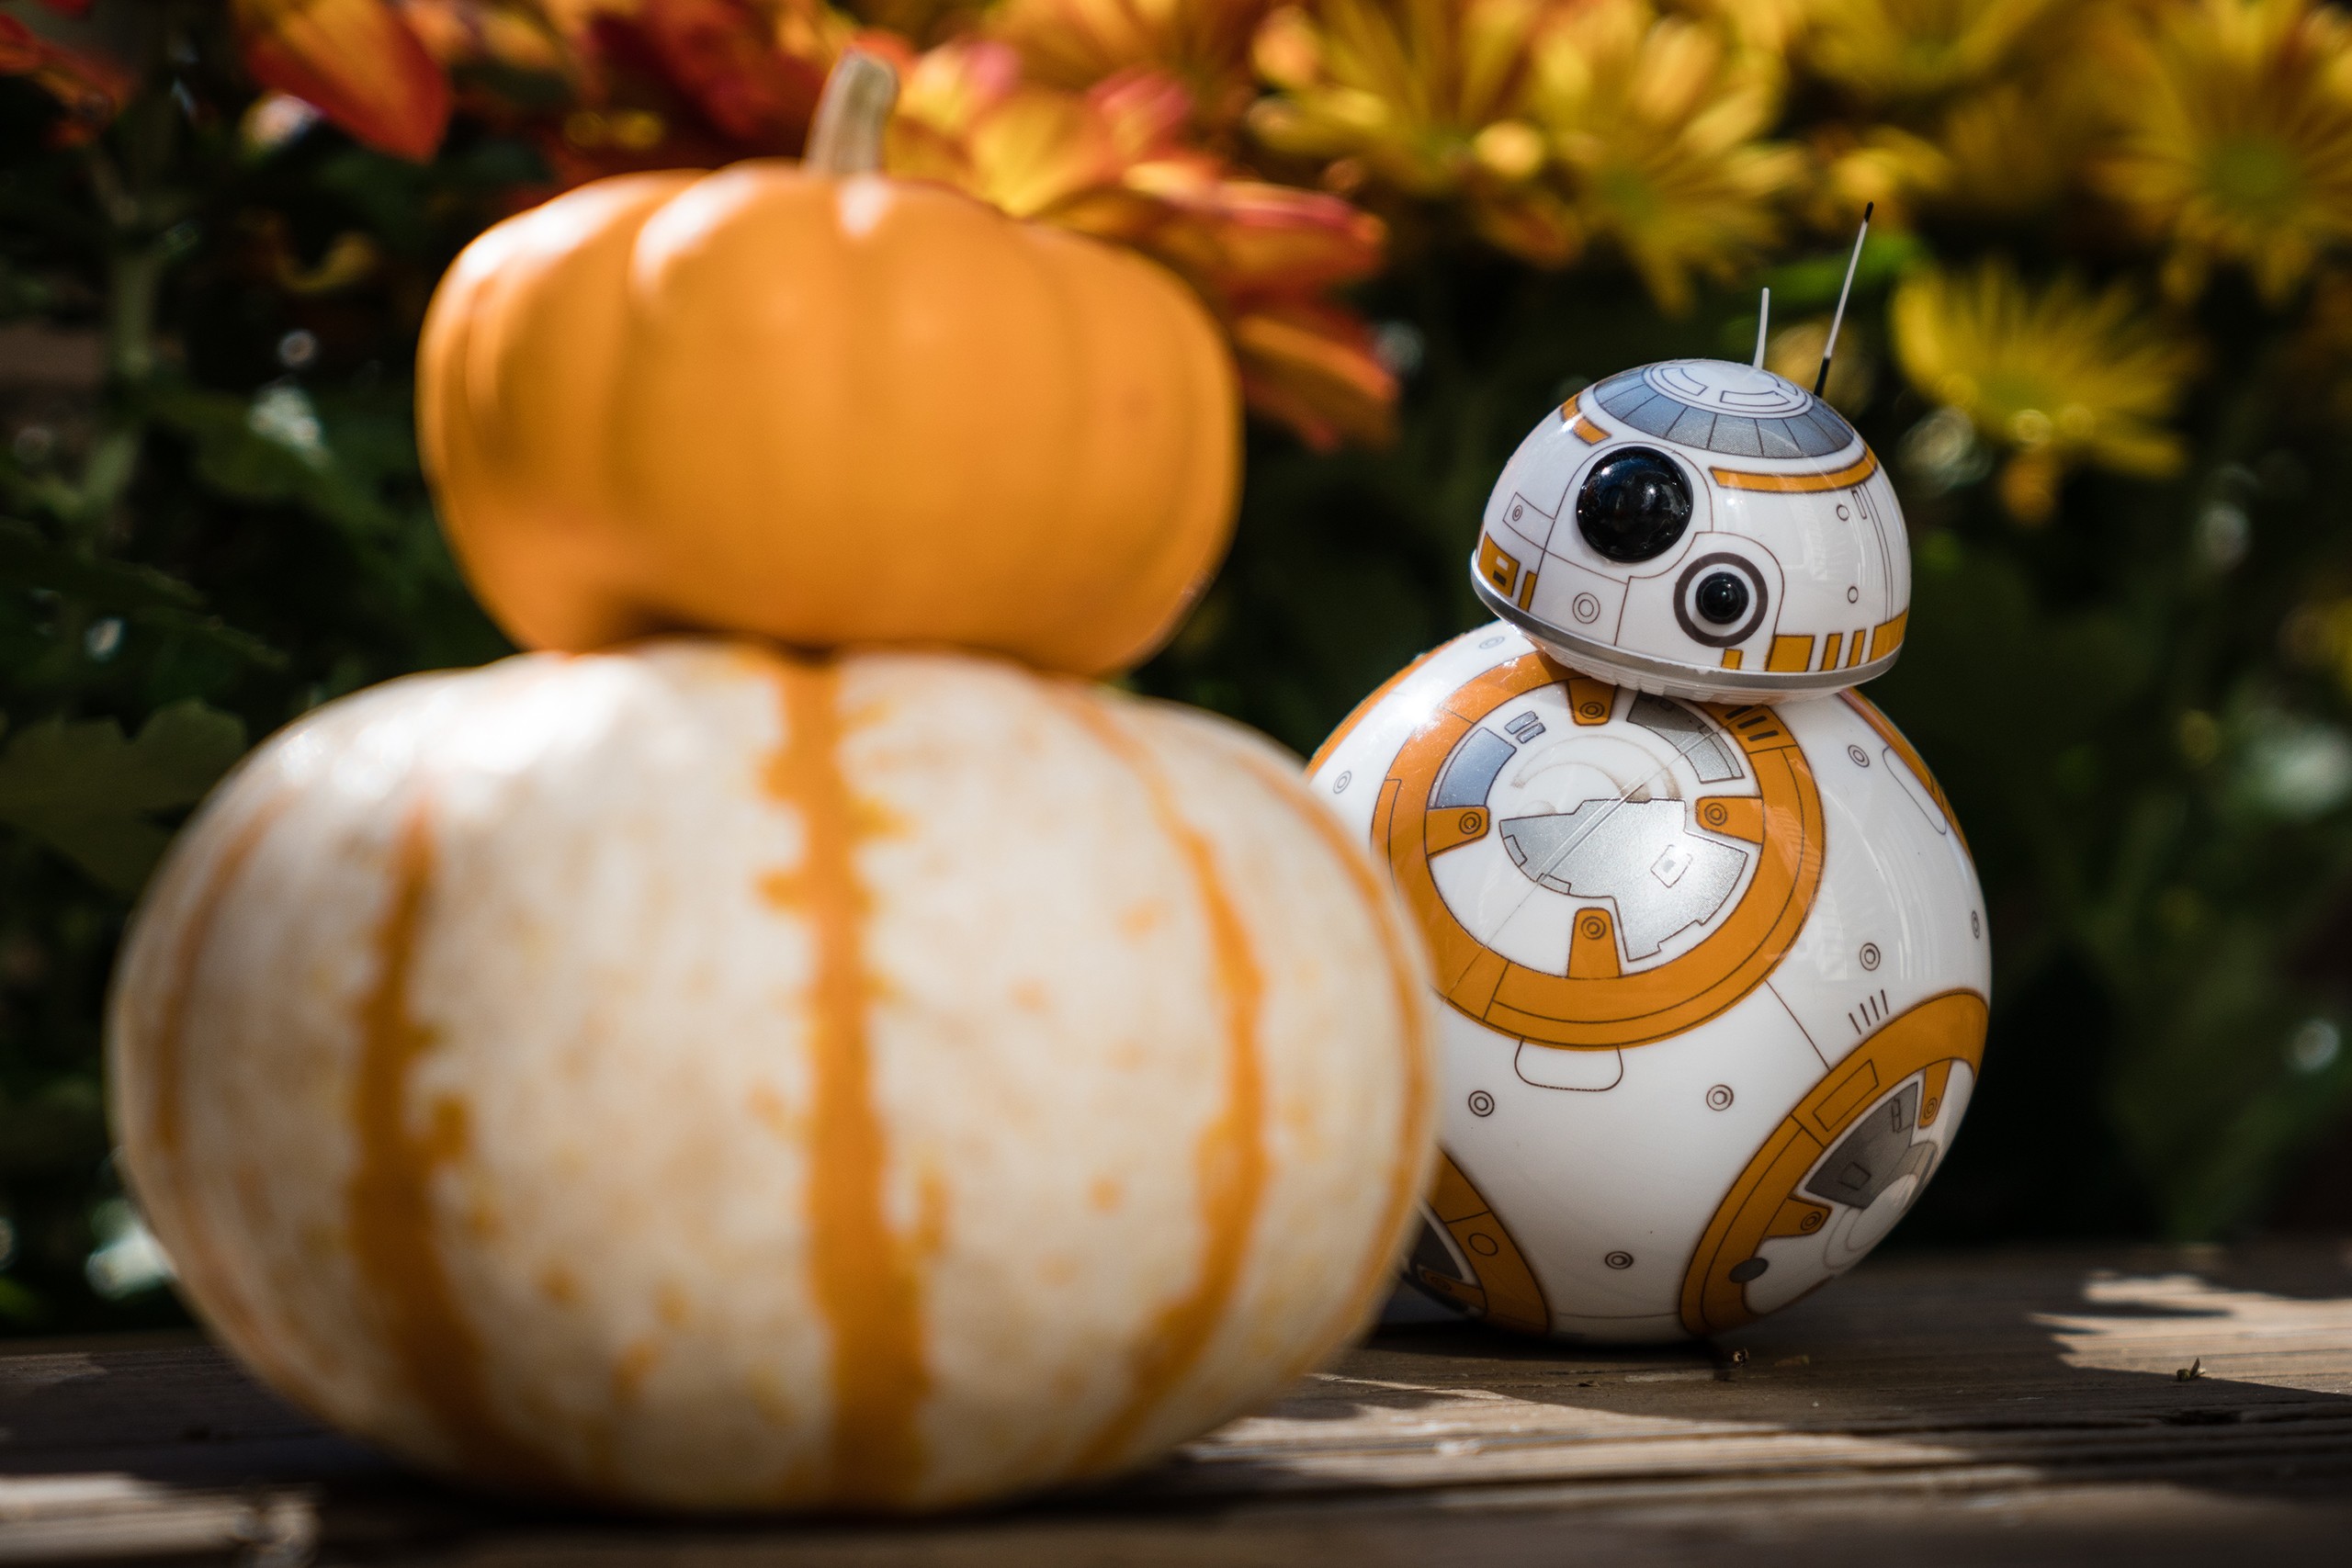 General 2560x1707 Star Wars drone BB-8 pumpkin humor